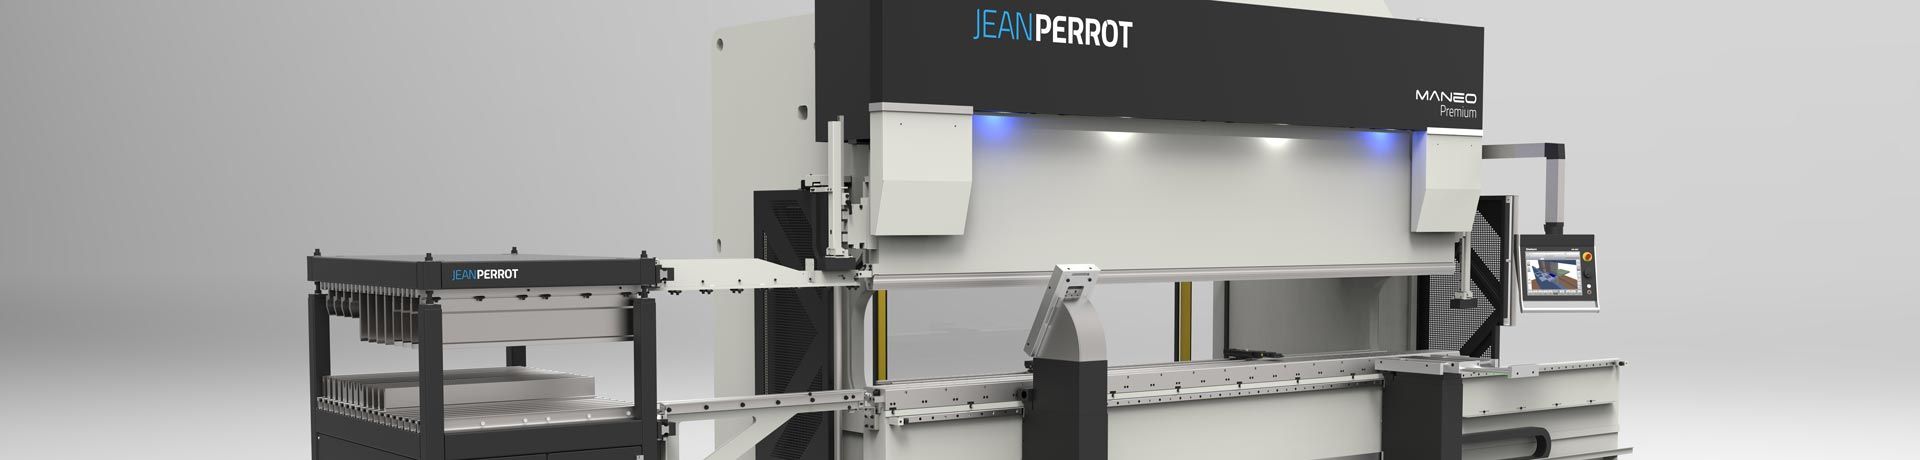 JEAN PERROT, marque du groupe d'ingénierie industrielle PINETTE PEI, est spécialisée dans la conception et la fabrication d'équipements pour le travail des métaux en feuille et des profilés : presses-plieuses, cellules de pliage robotisées, cisailles, centre de cisaillage, rouleuses, cintreuses, poinçonneuses...